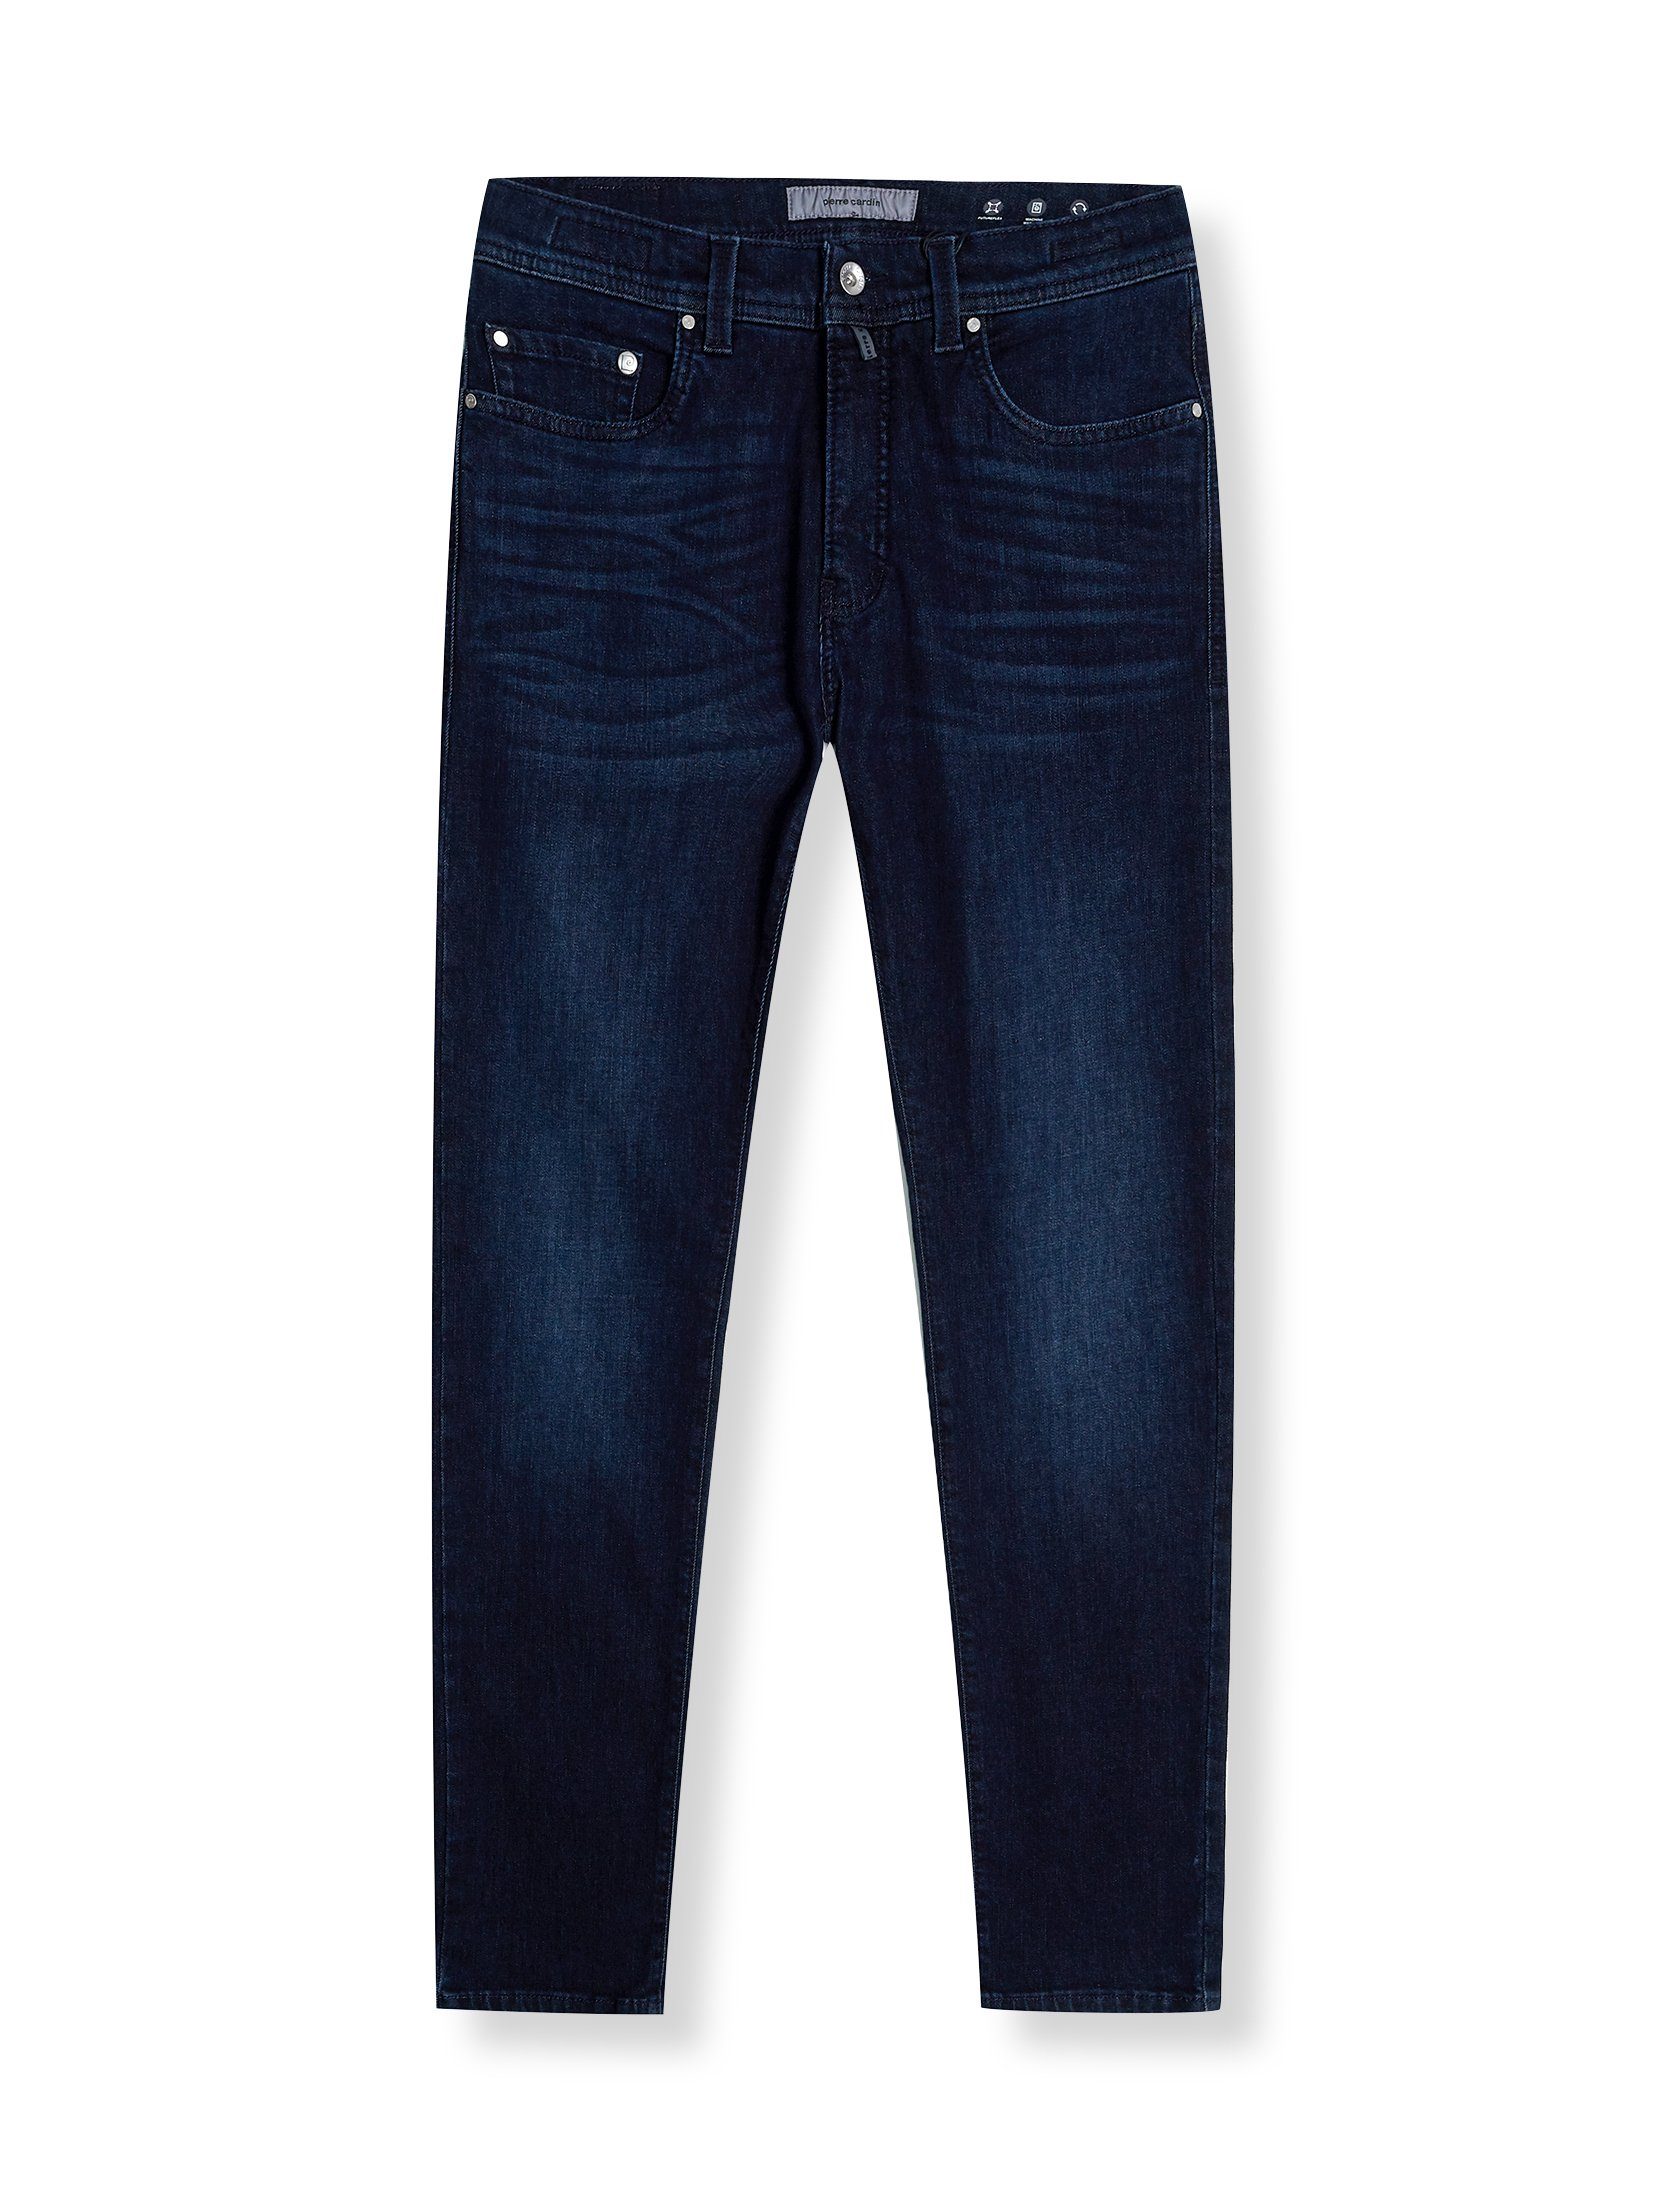 Pierre Cardin 5-Pocket-Jeans dark blue used buffies